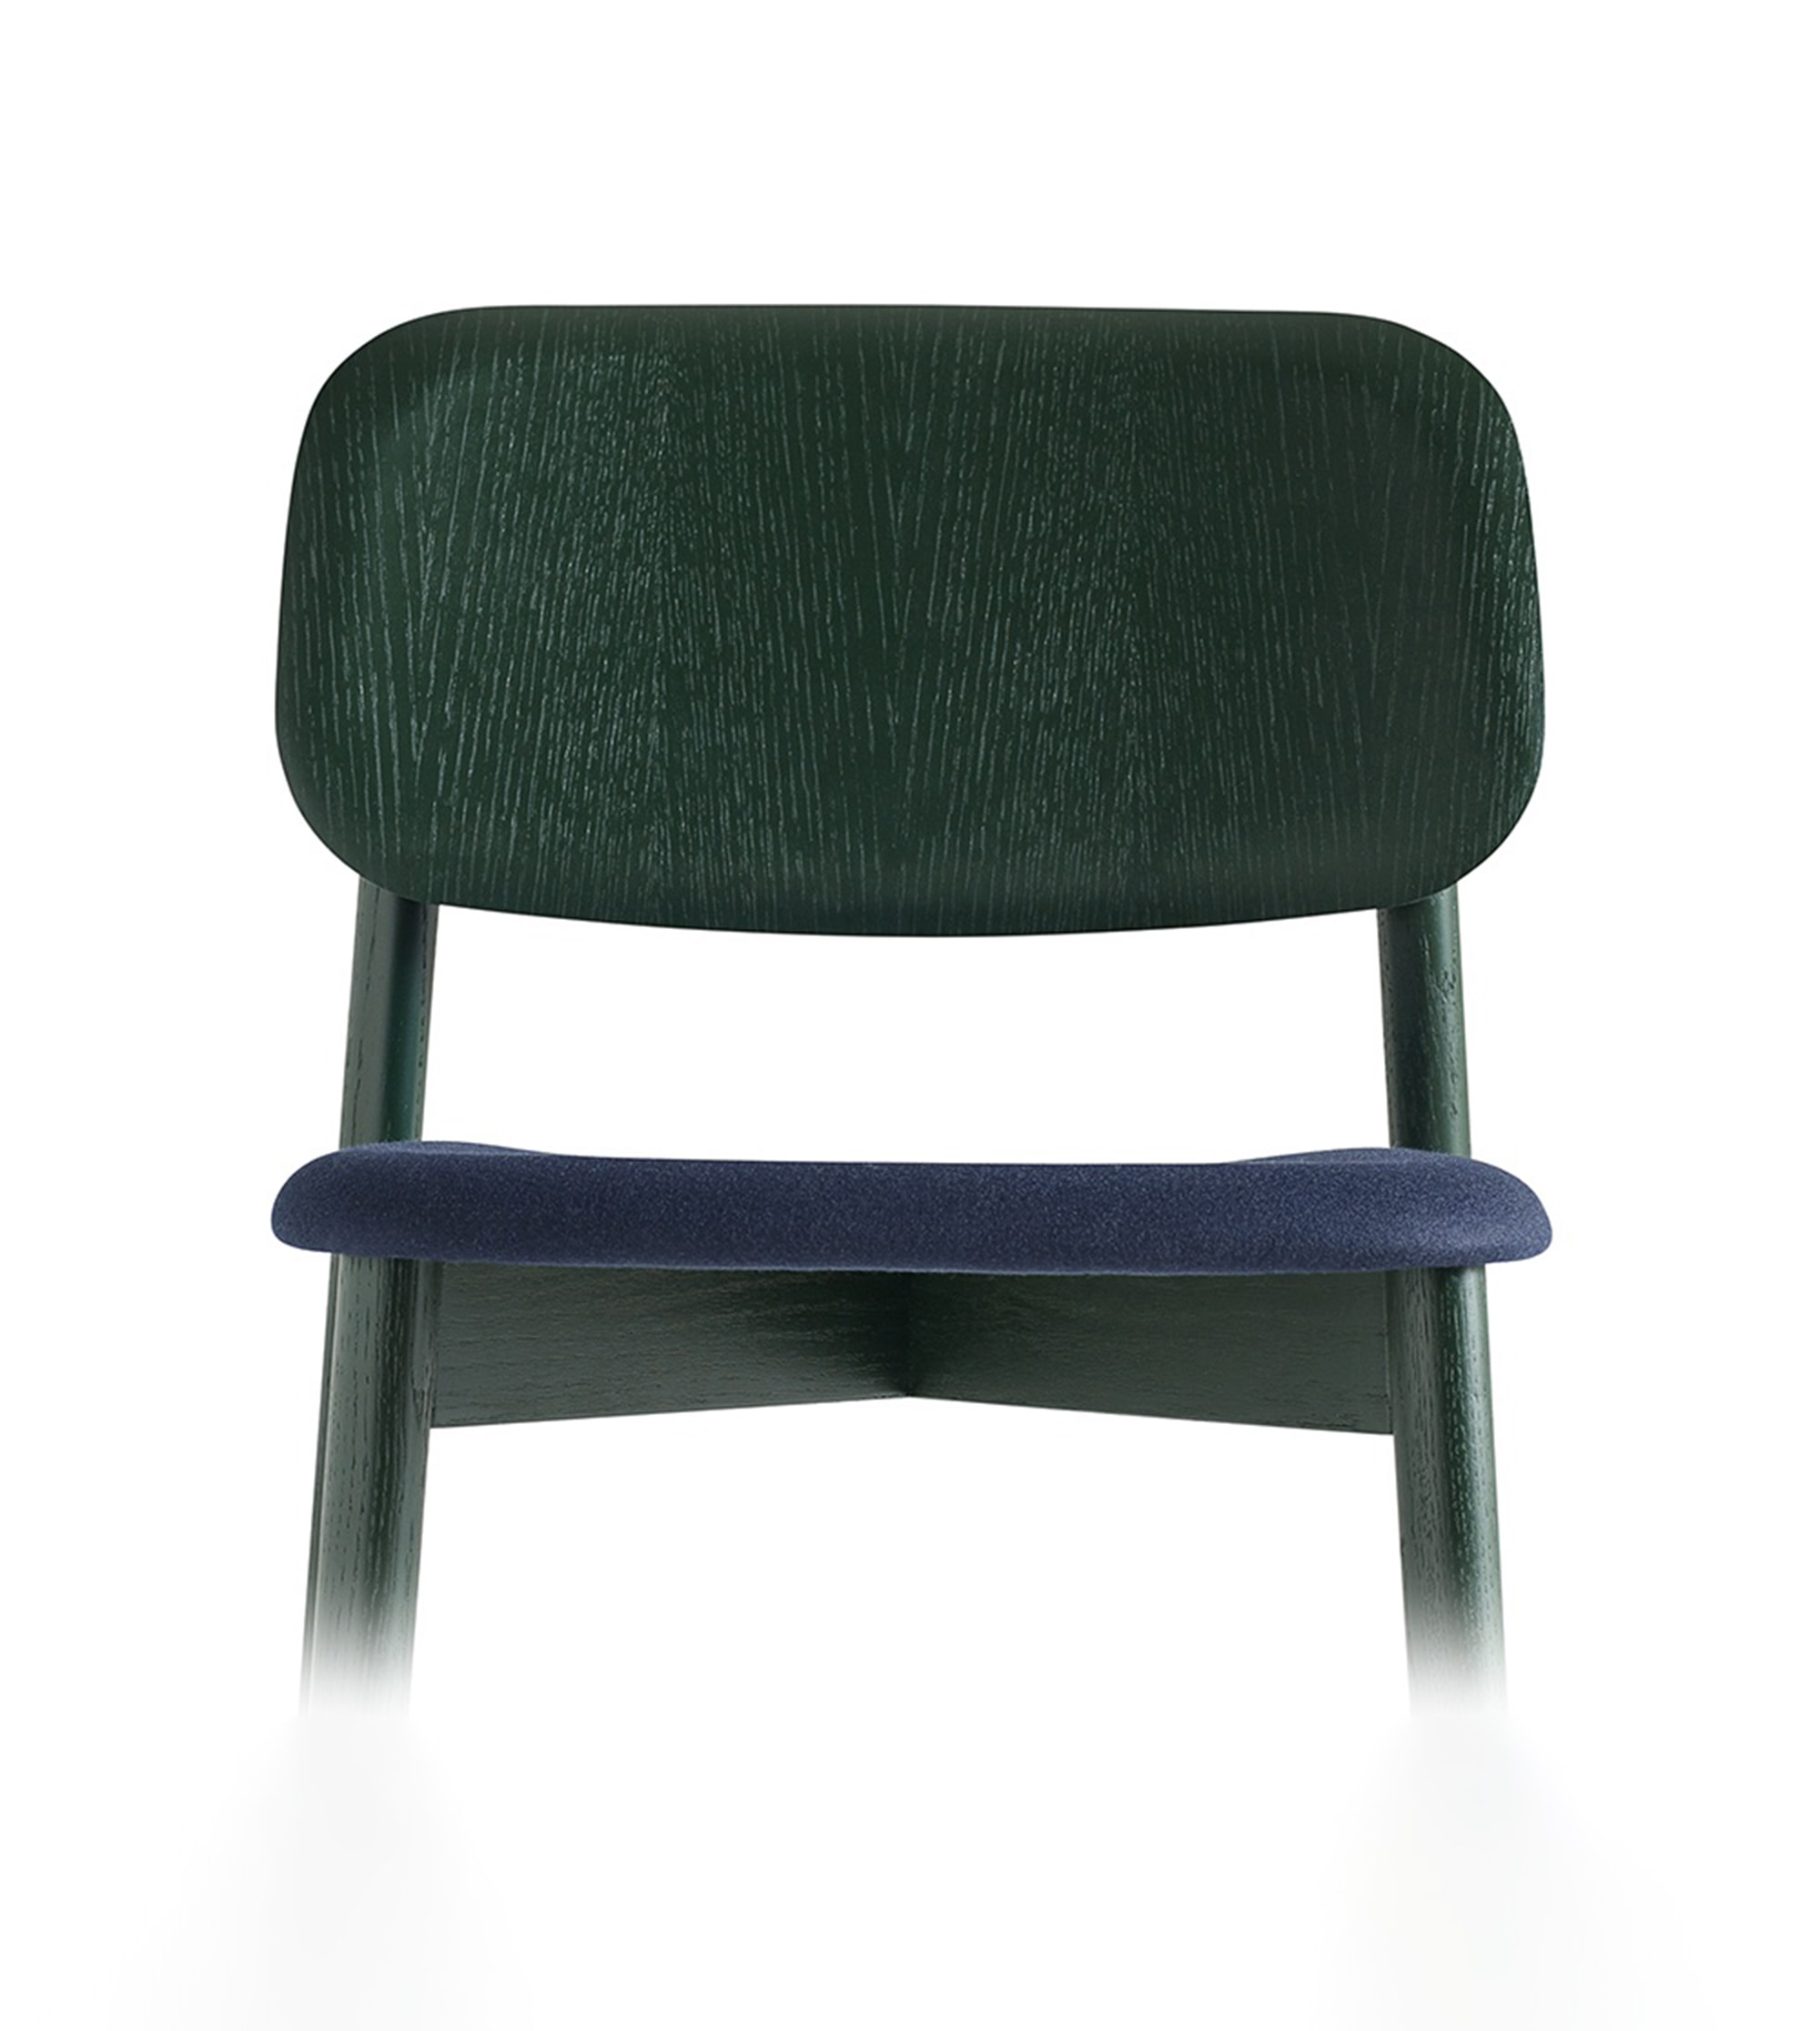 Chaise soft edge 12  tapissée en tissu forest nap 792 - pieds bois teinté vert